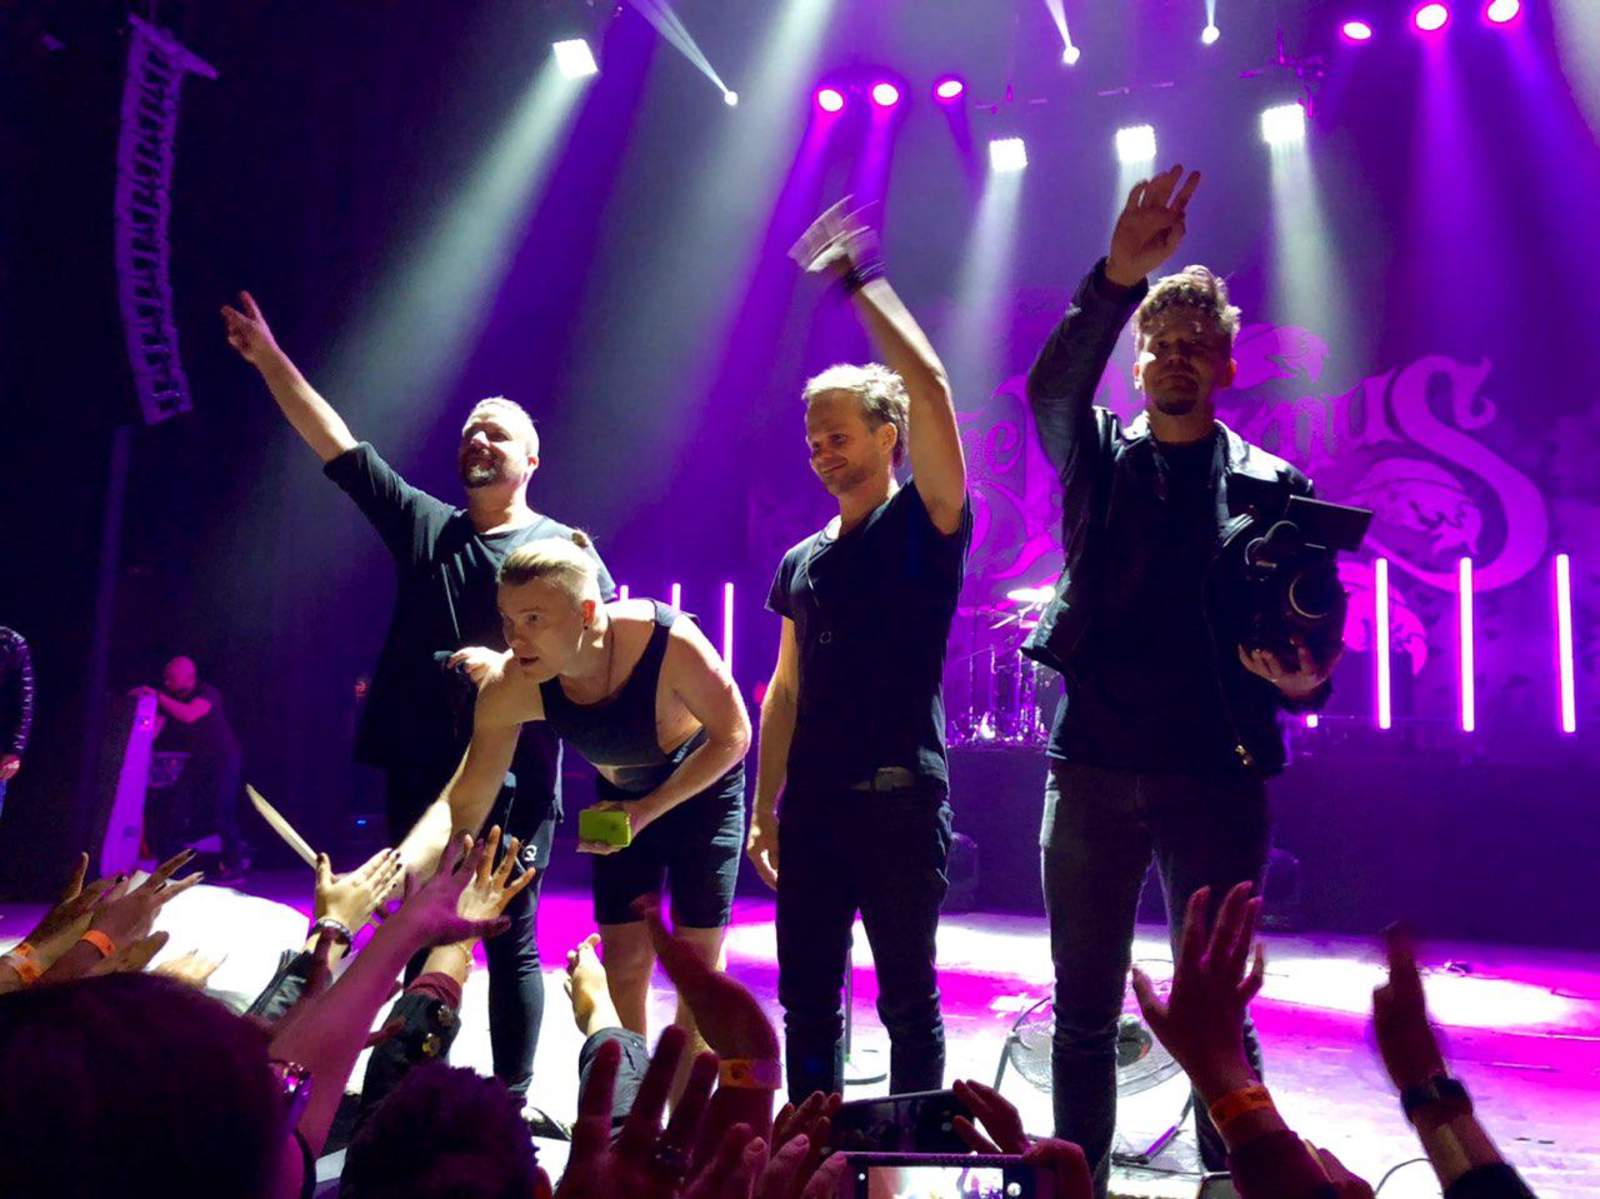 La banda finlandesa regresó este lunes a México, ofreciendo en Monterrey el primero de cuatro conciertos de su gira Dark Matters Tour. (JOSÉ HERNÁNDEZ)